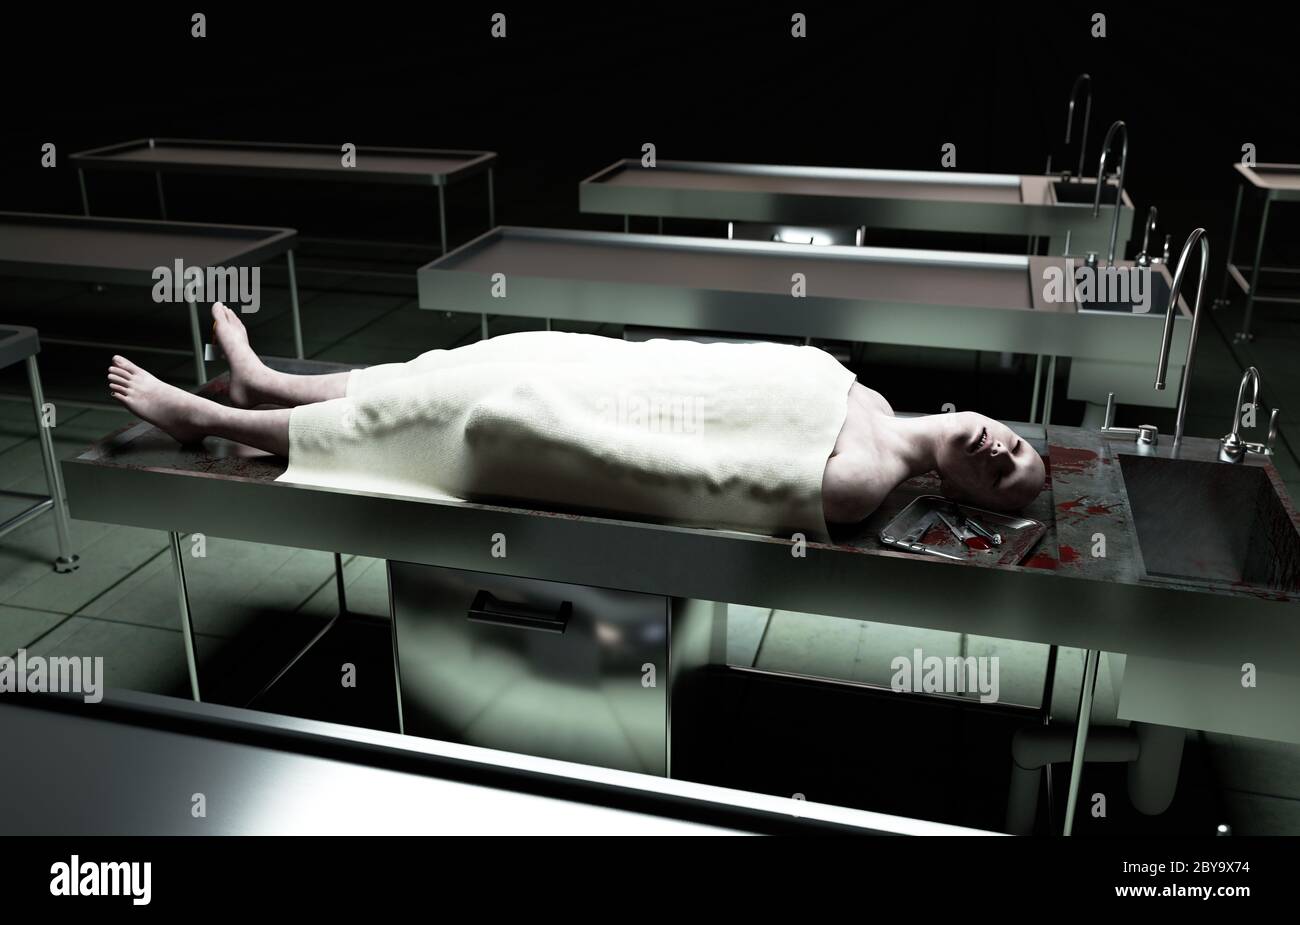 Leichnam, toter männlicher Körper in Leichenhalle auf Stahltisch. Leiche. Autopsie-Konzept. 3d-Rendering. Stockfoto